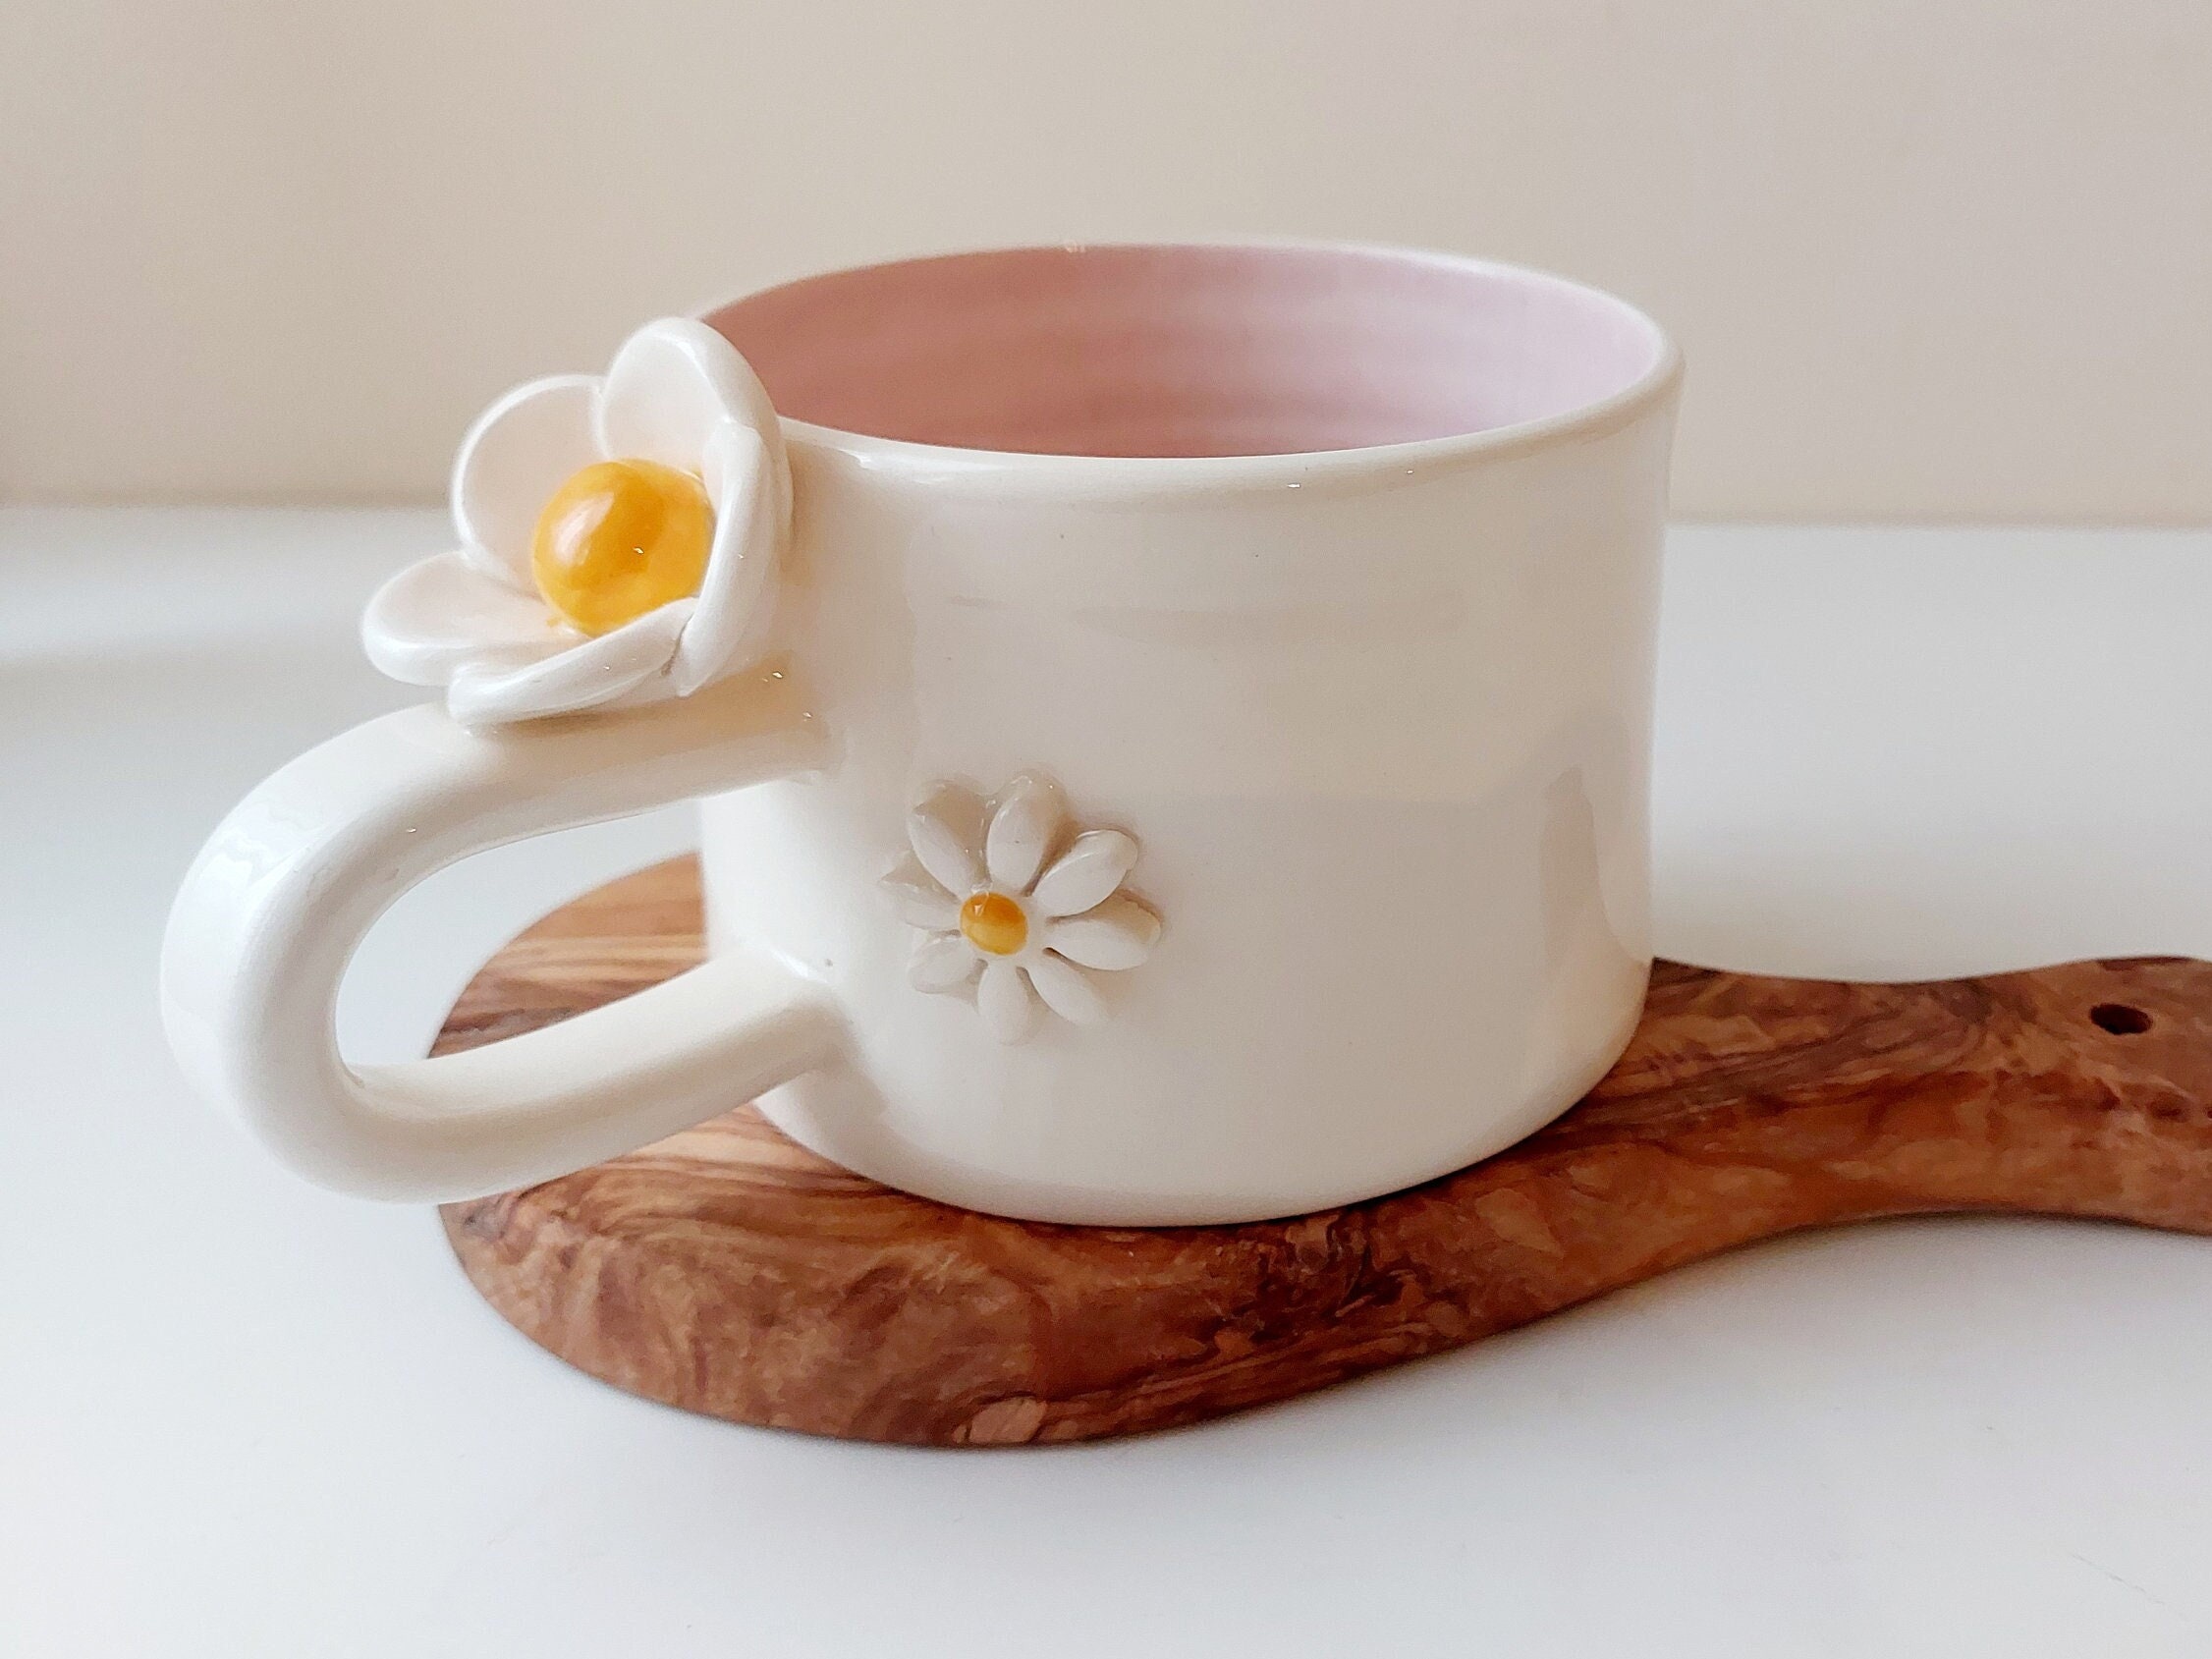 Accessoires thé : tasses, mugs et autres accessoires pour le thé